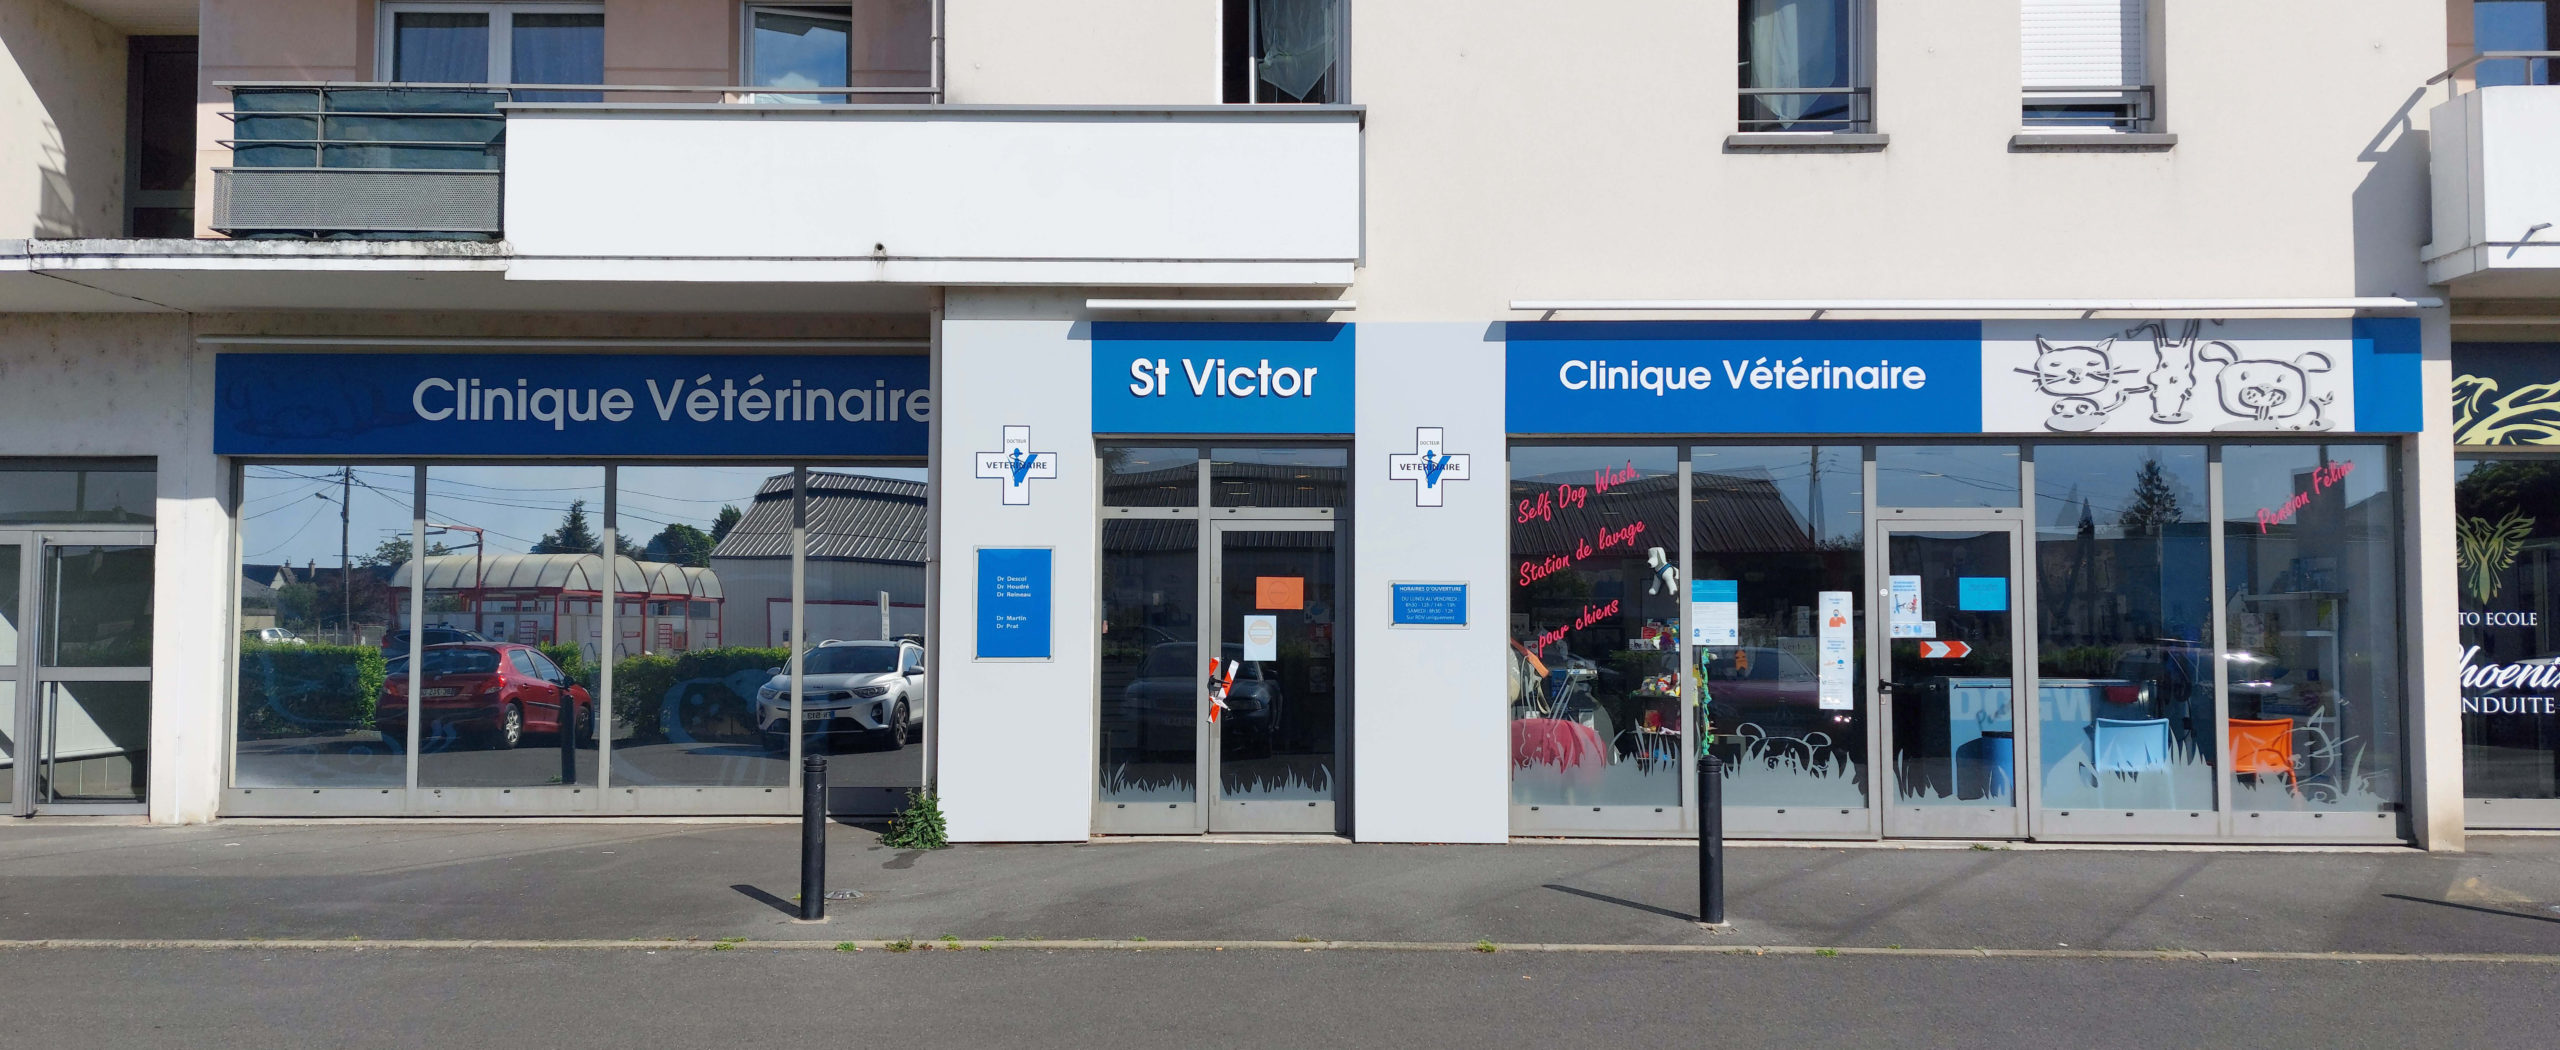 Clinique vétérinaire St Victor